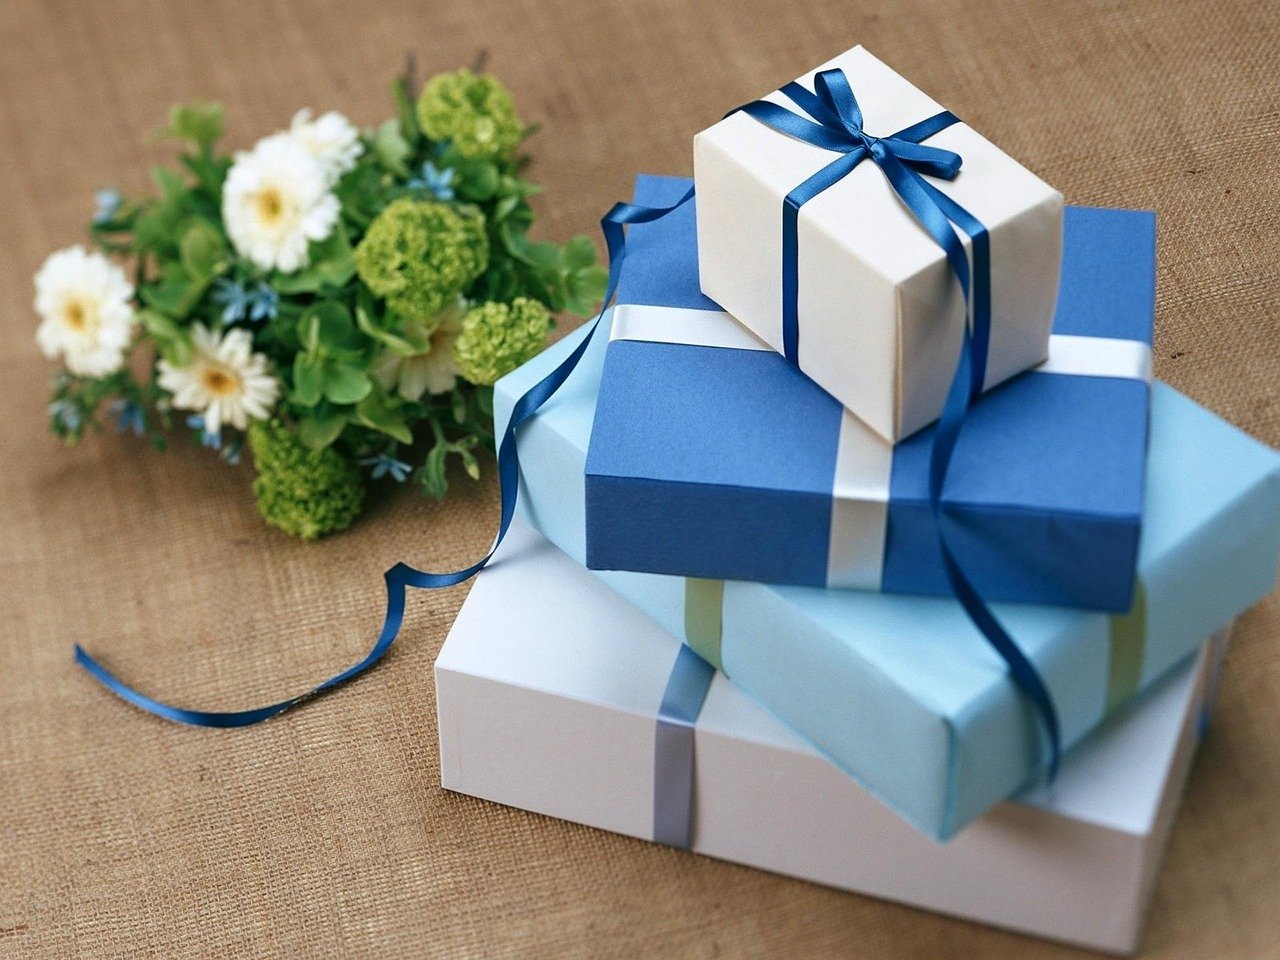 Cách chọn quà, gói quà, nên làm và cần tránh gì khi tặng quà cho người Nhật?